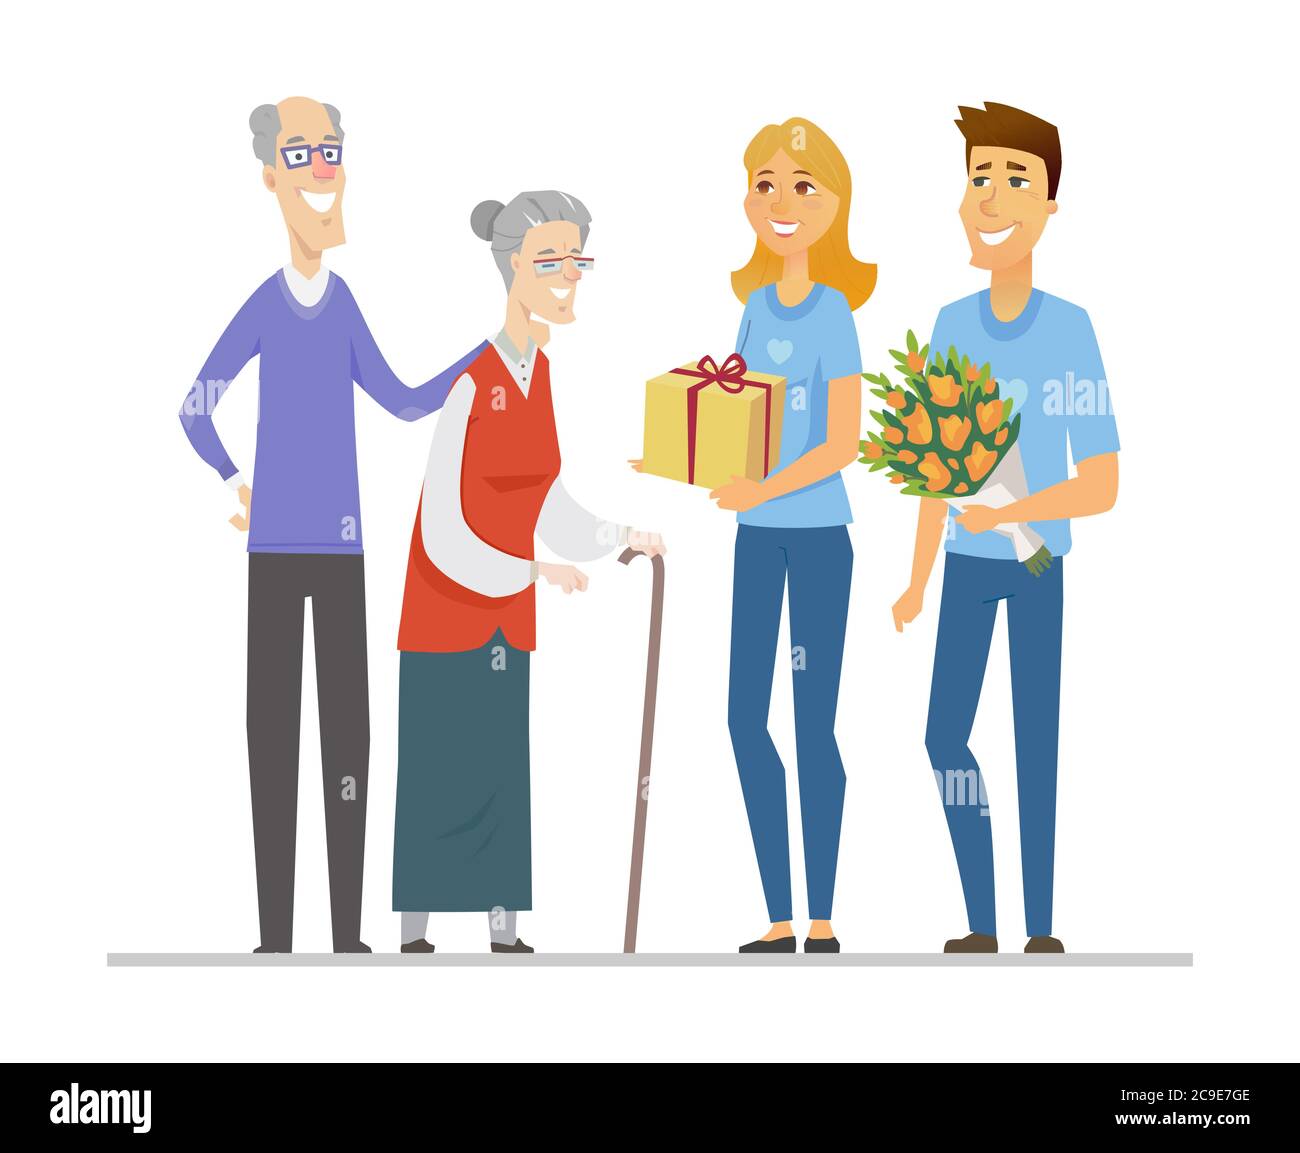 Freiwillige und ältere Menschen - flache Design-Stil Illustration Stock Vektor